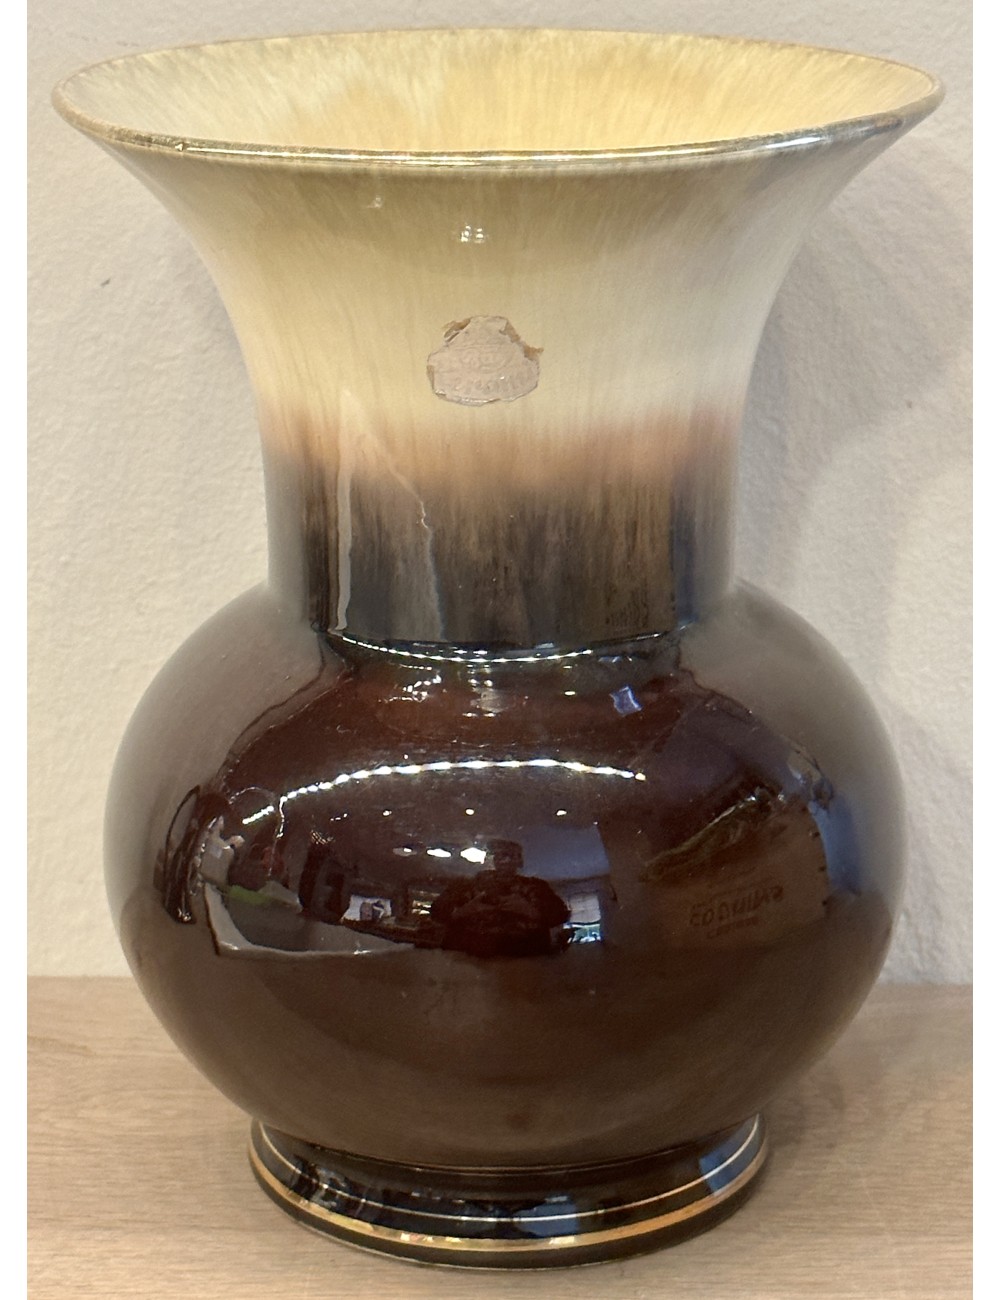 Vaas - BAY Keramik (Duitsland) - gemerkt met Germany 203.20 - uitgevoerd in tinten donker- en lichtbruin